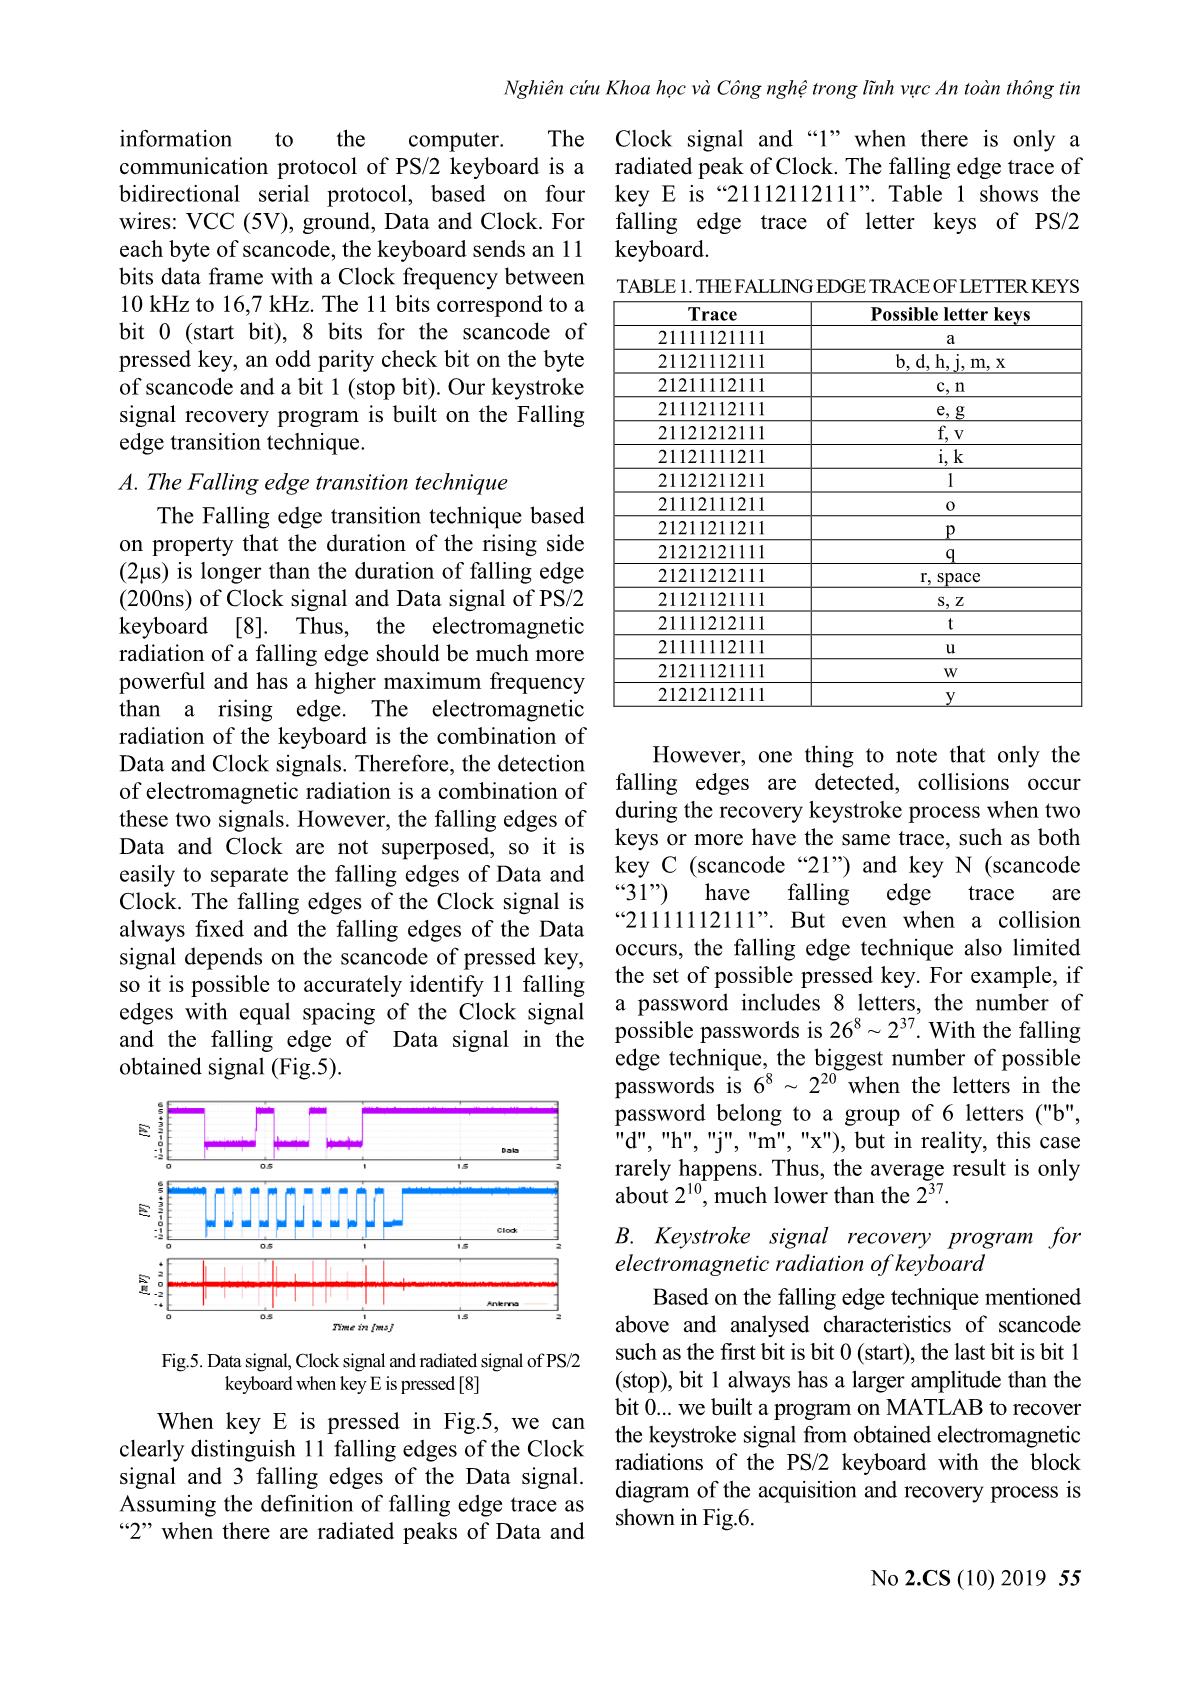 Information leakage through electromagnetic radiation of ps / 2 keyboard trang 5